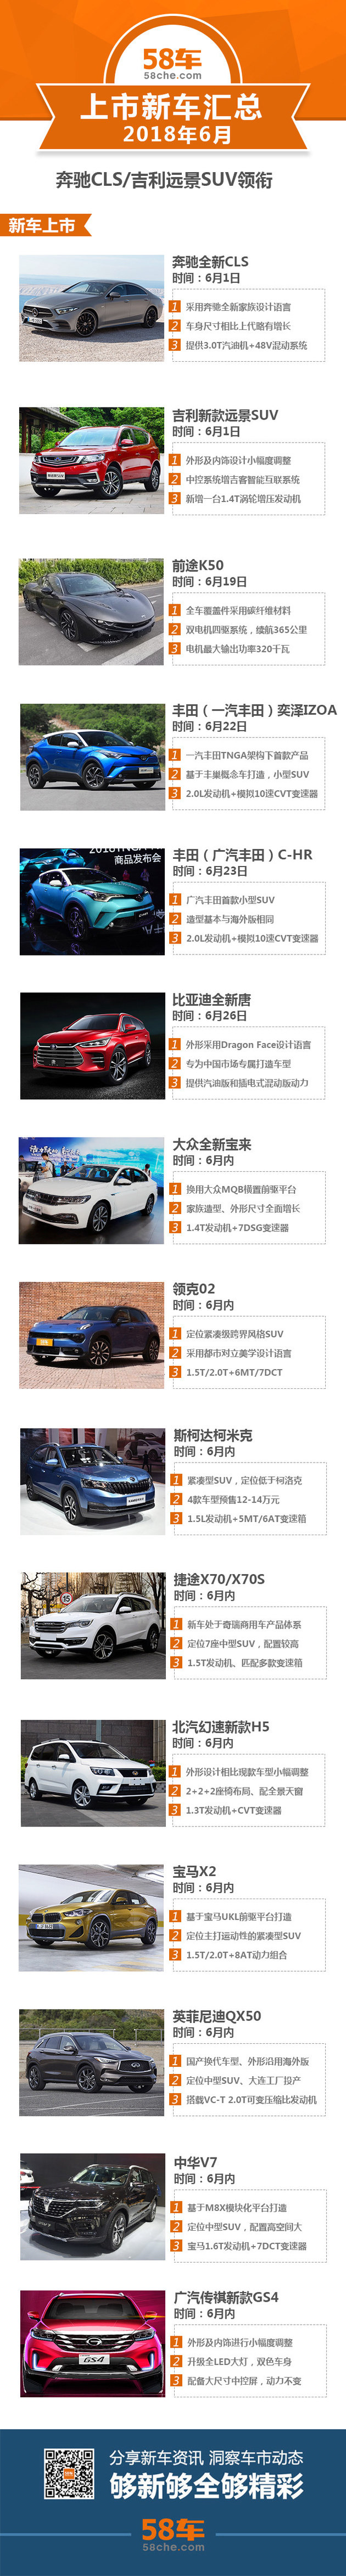 奔驰CLS/吉利远景SUV领衔 6月上市新车